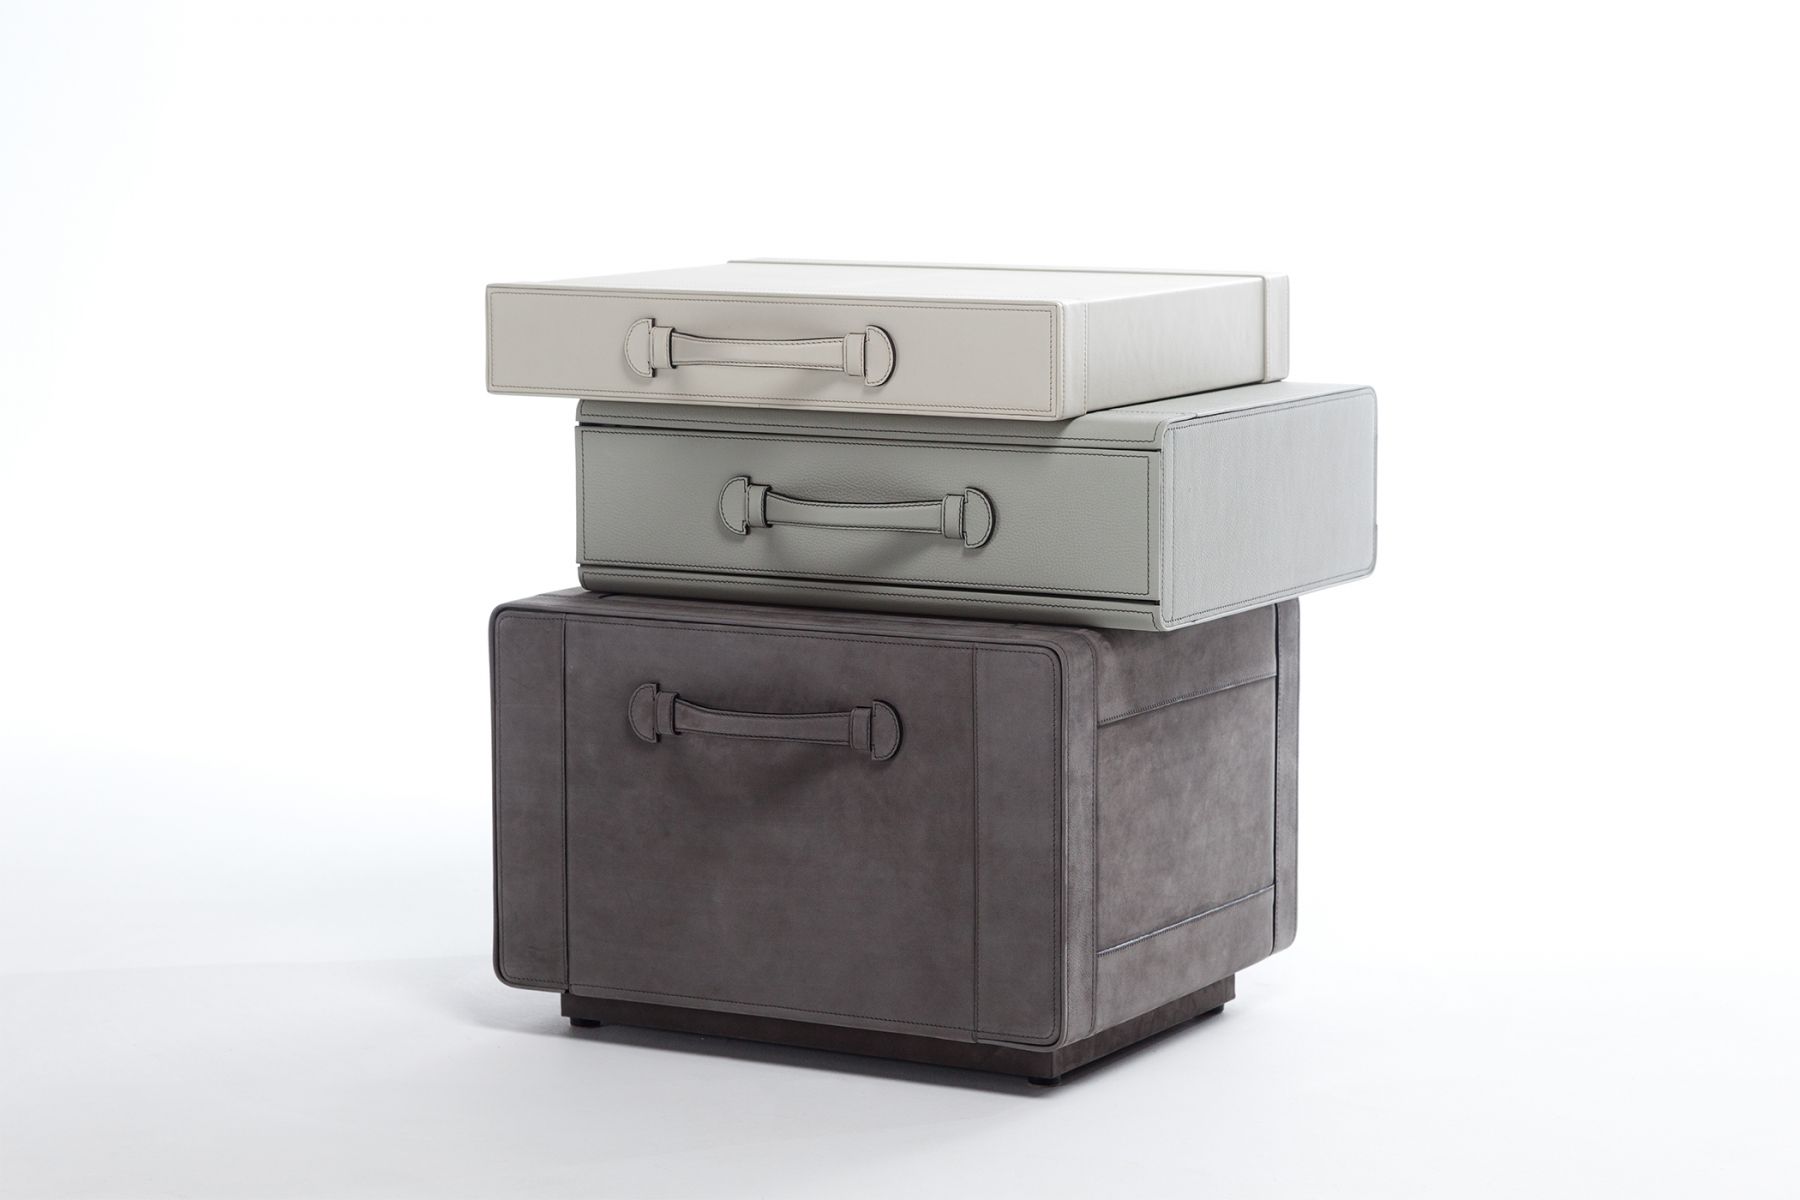 Bedside tables of briefcases Maarten De Ceulaer pic-1